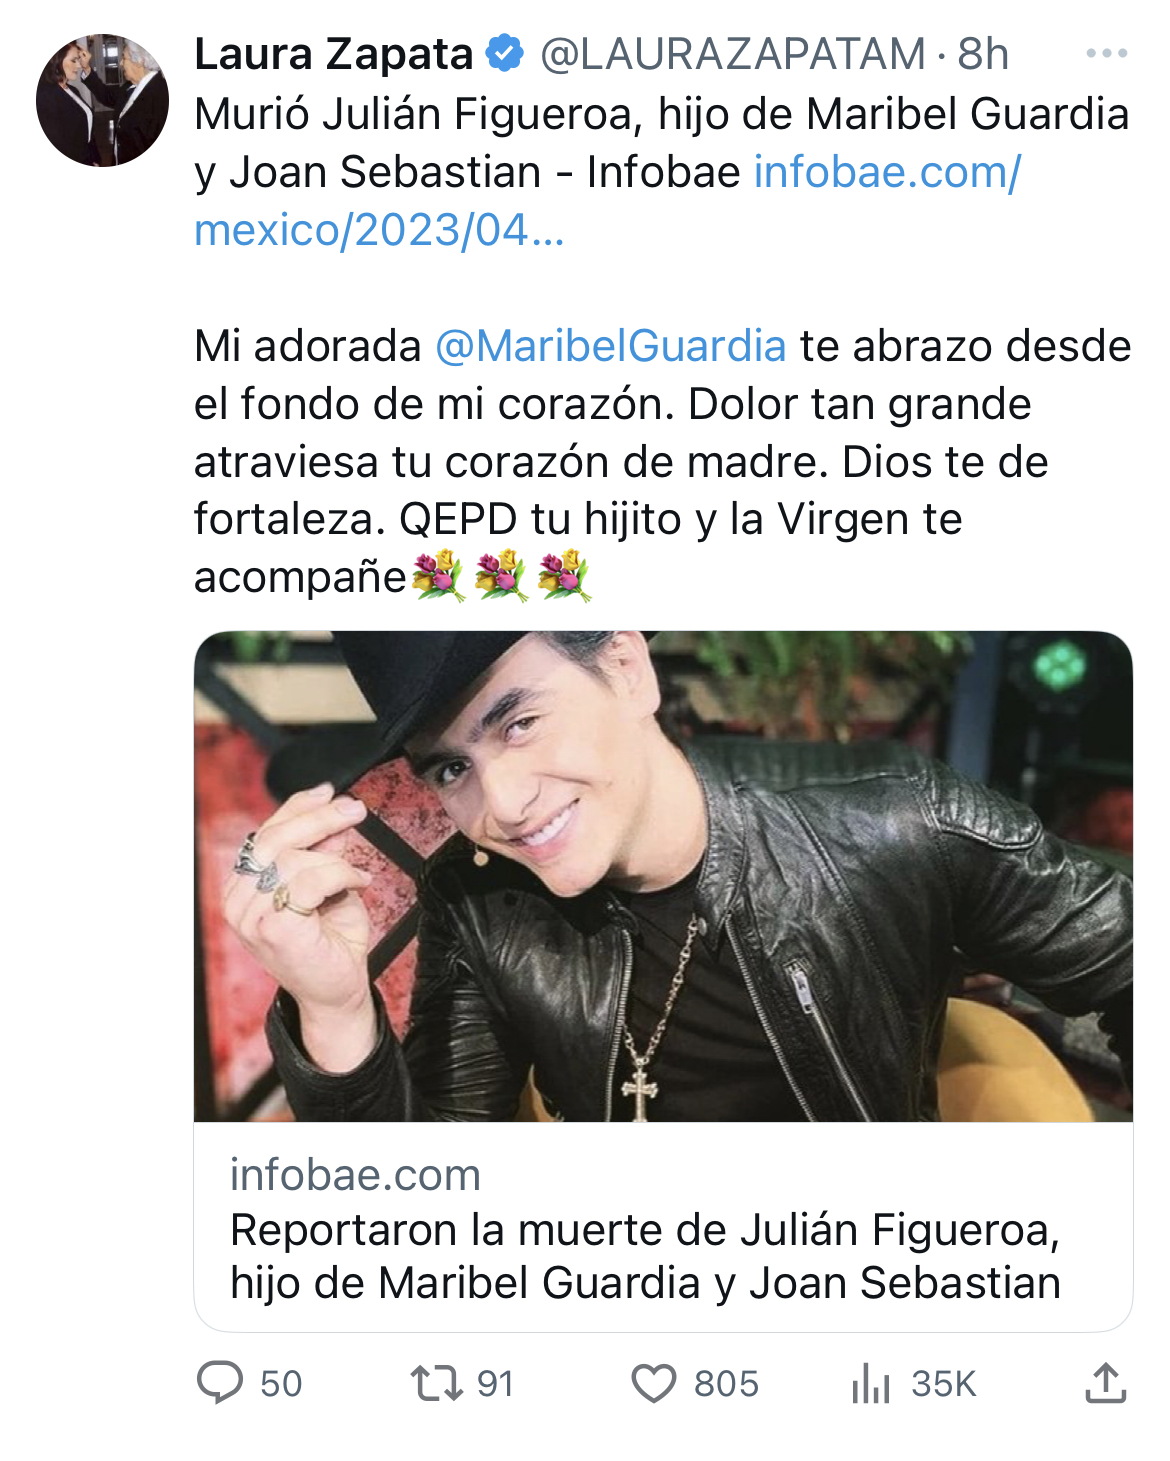 La actriz Laura Zapata compartió información sobre el deceso de Julián Figueroa (Captura de pantalla Twitter @LAURAZAPATAM)